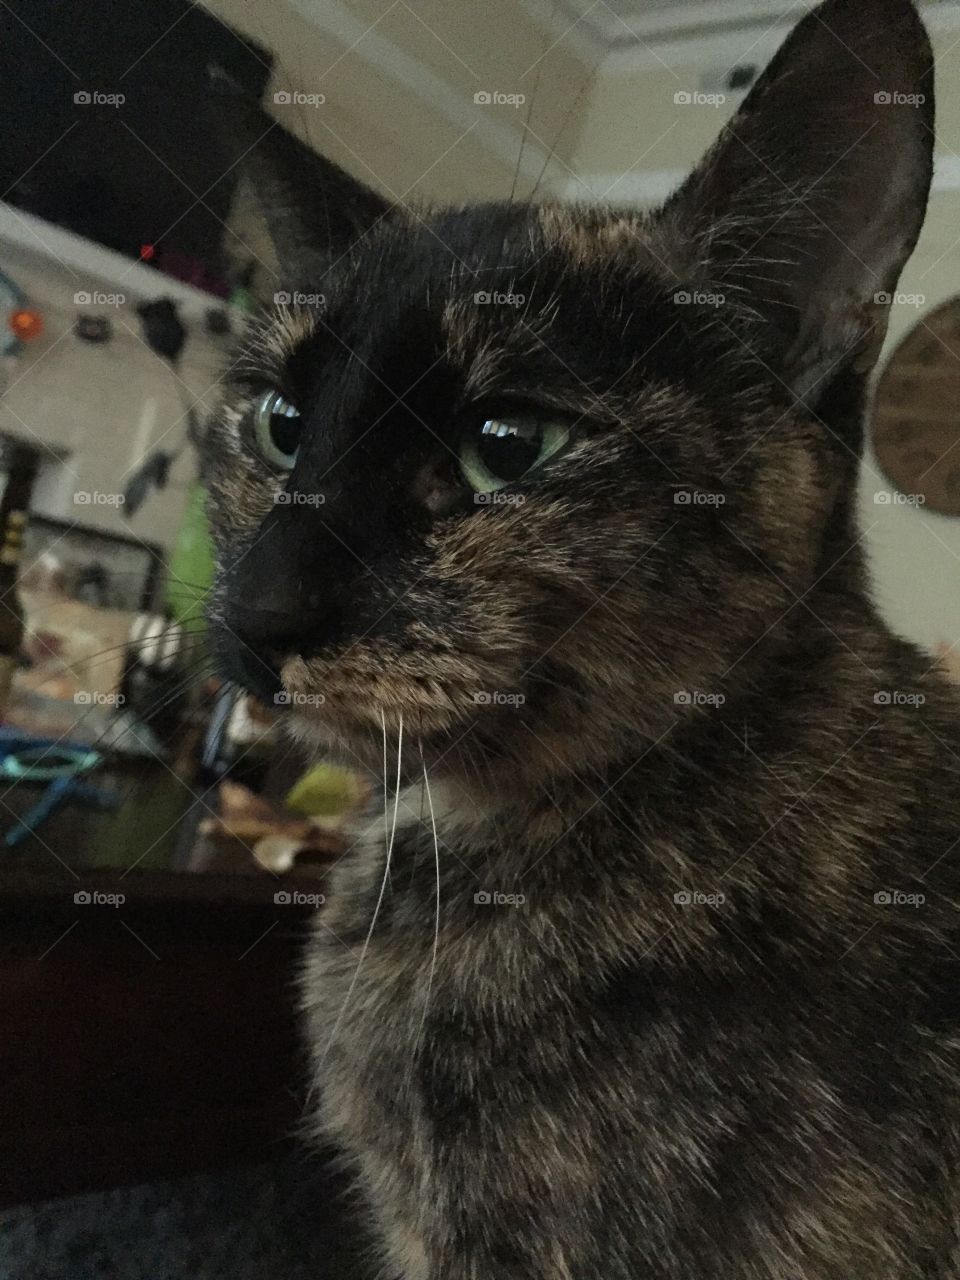 Serious cat face